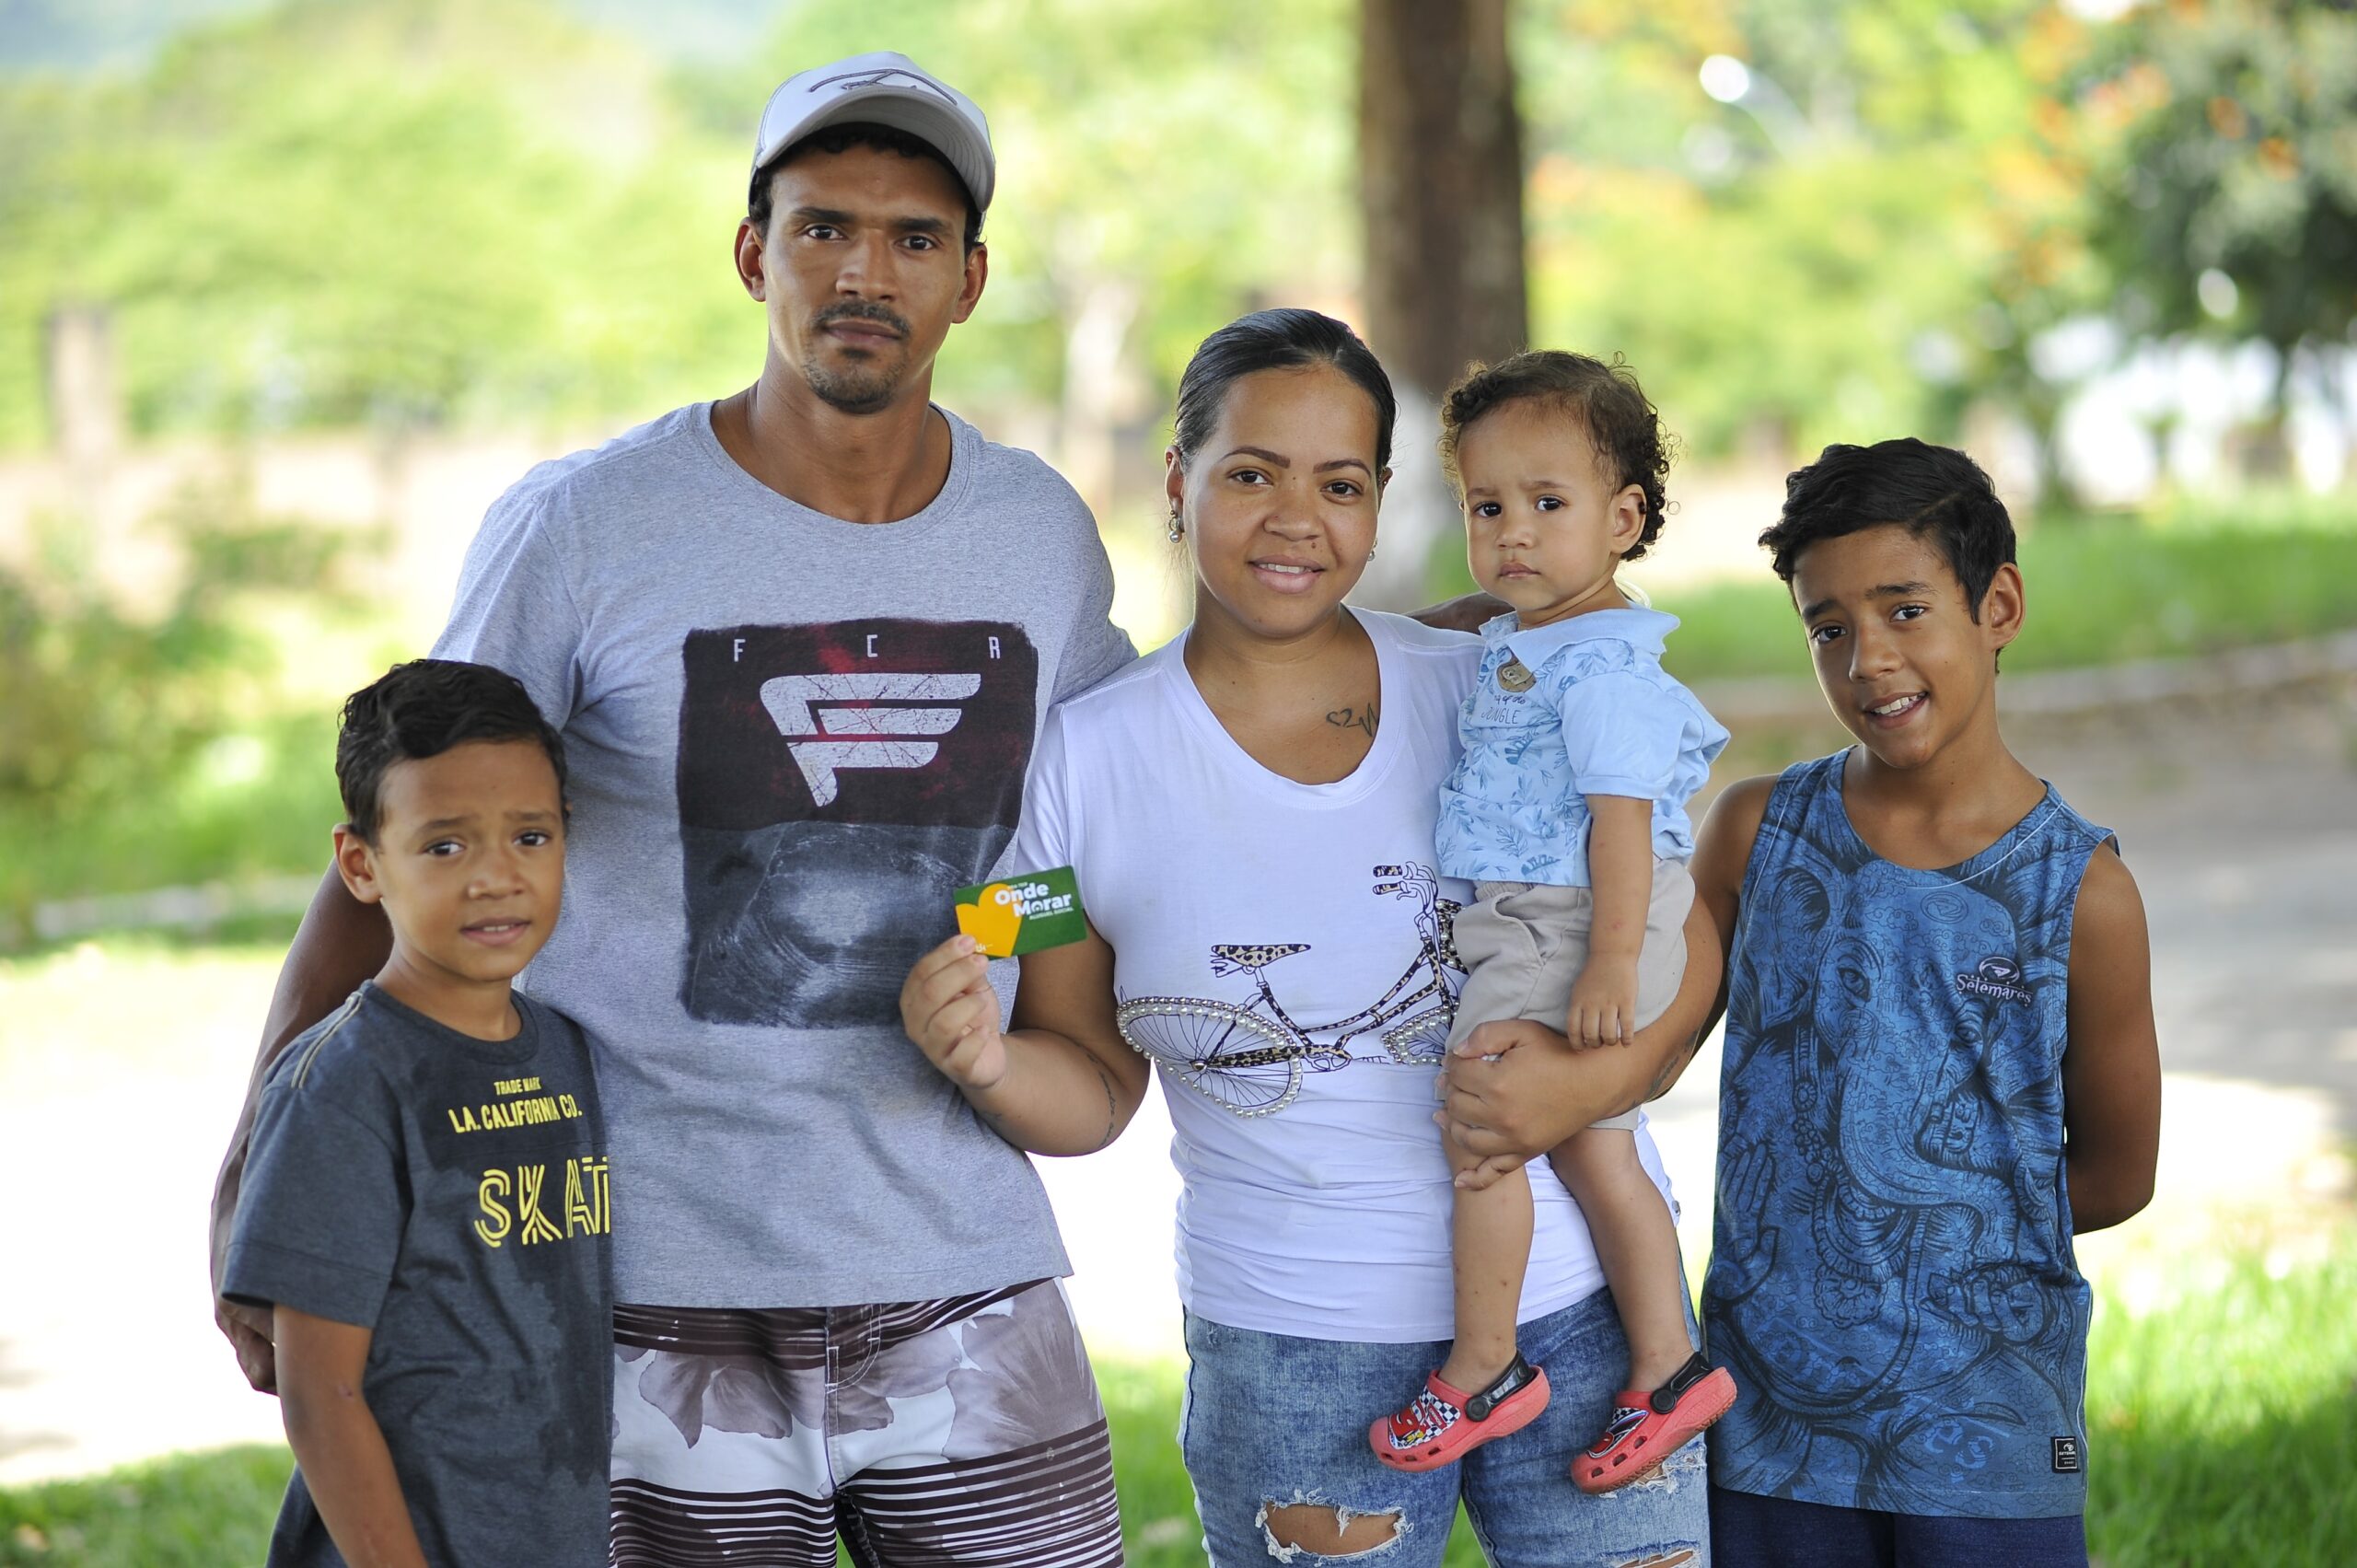 Agehab participa do Goiás Social em Uruaçu com entrega de cartões do Aluguel Social